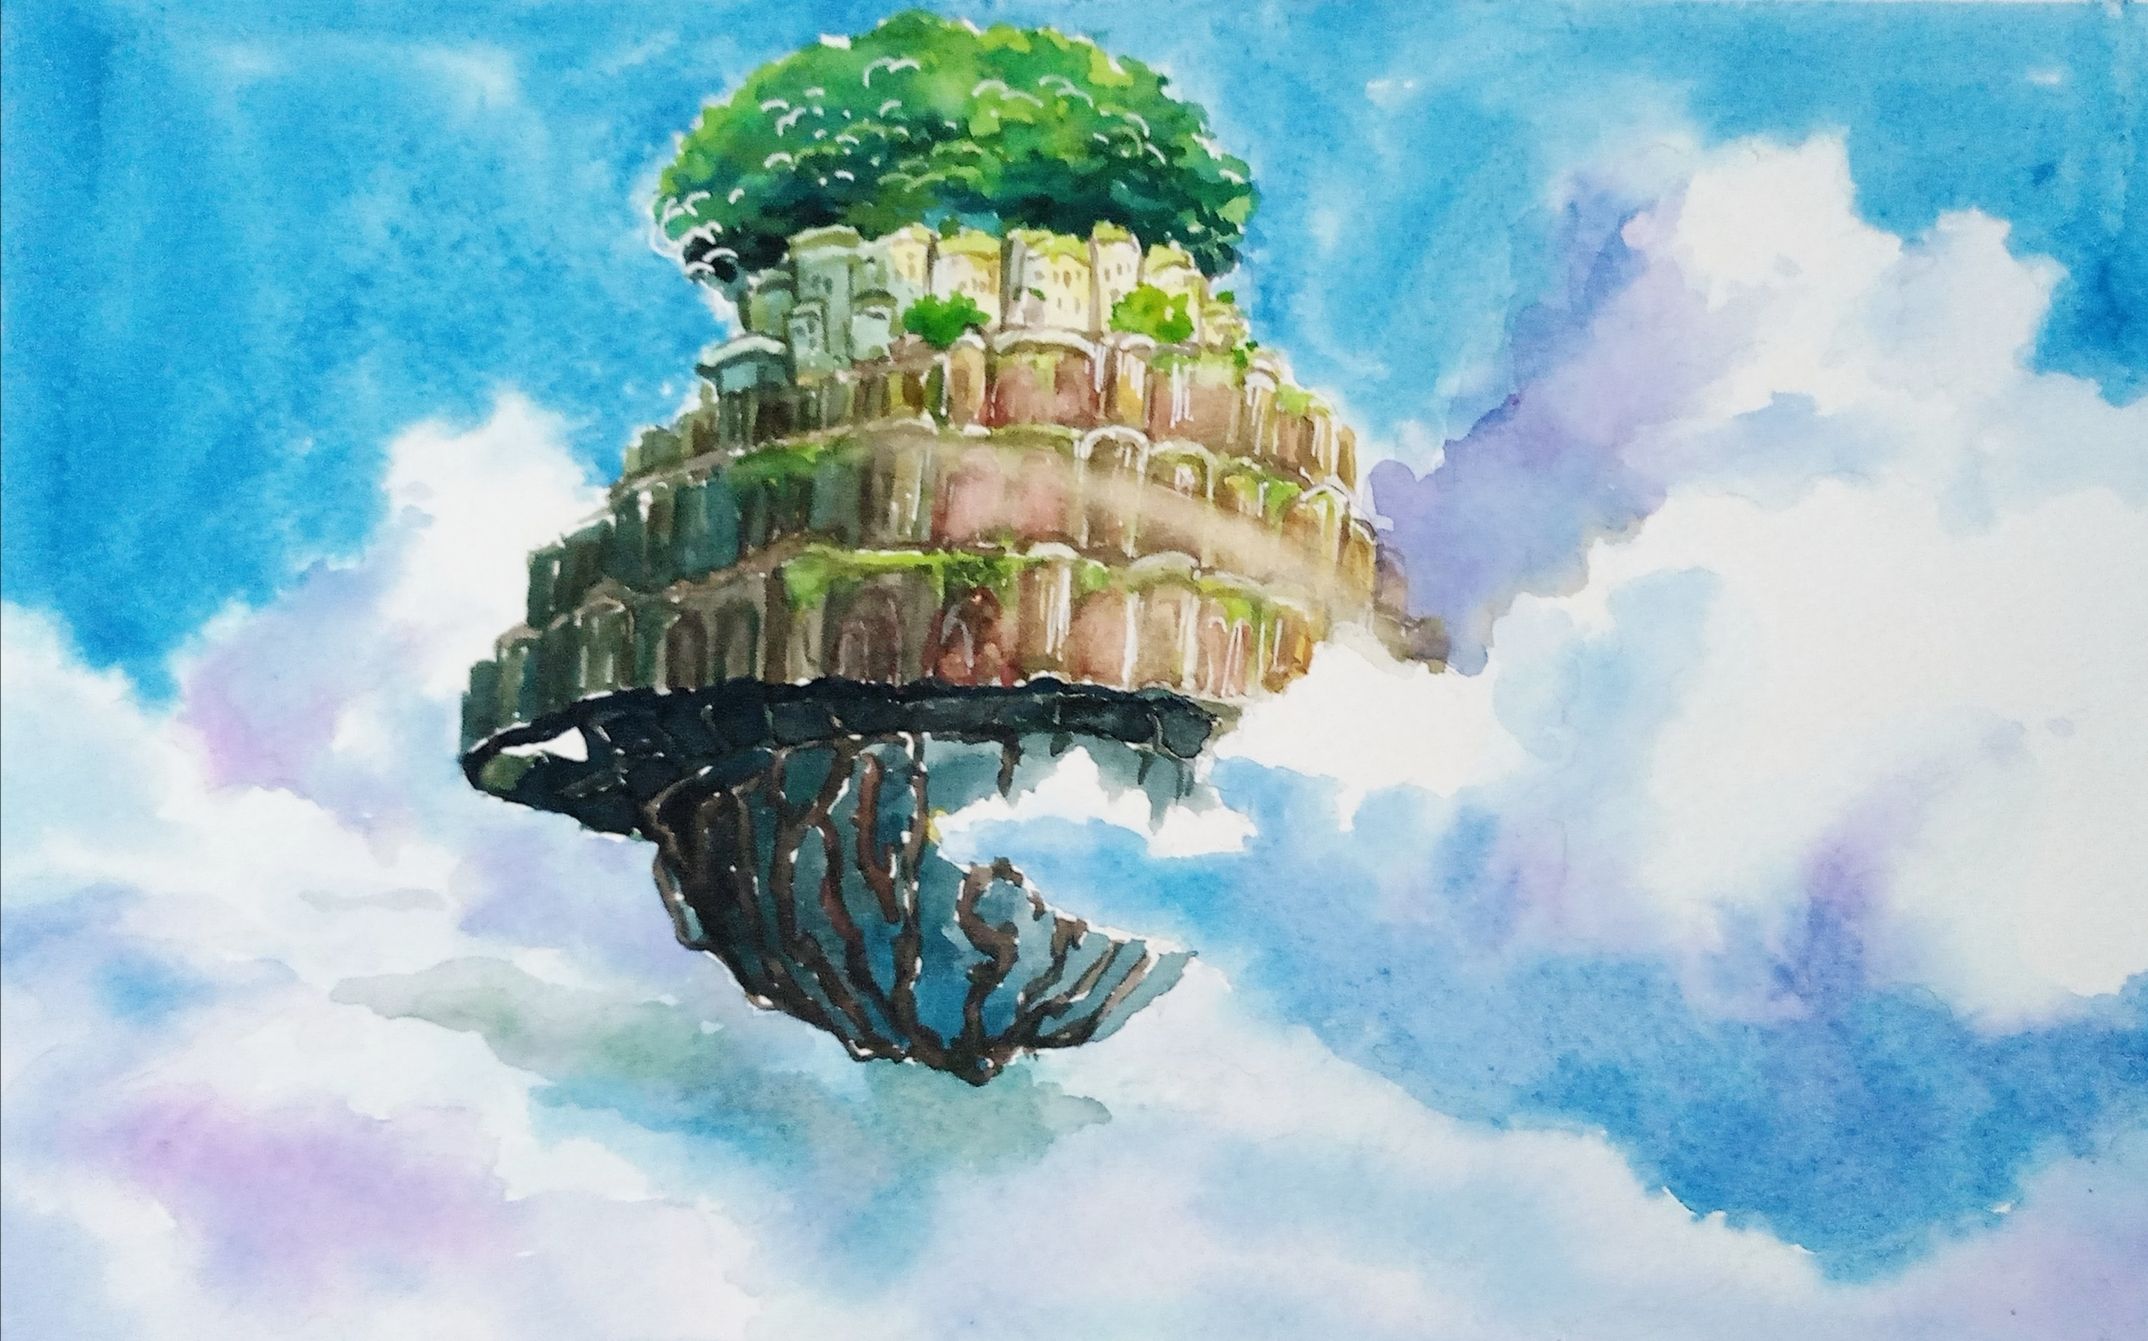 宫崎骏早年经典《天空之城》画面技巧赏析 - CG资讯 | 火星网－中国领先的数字艺术门户